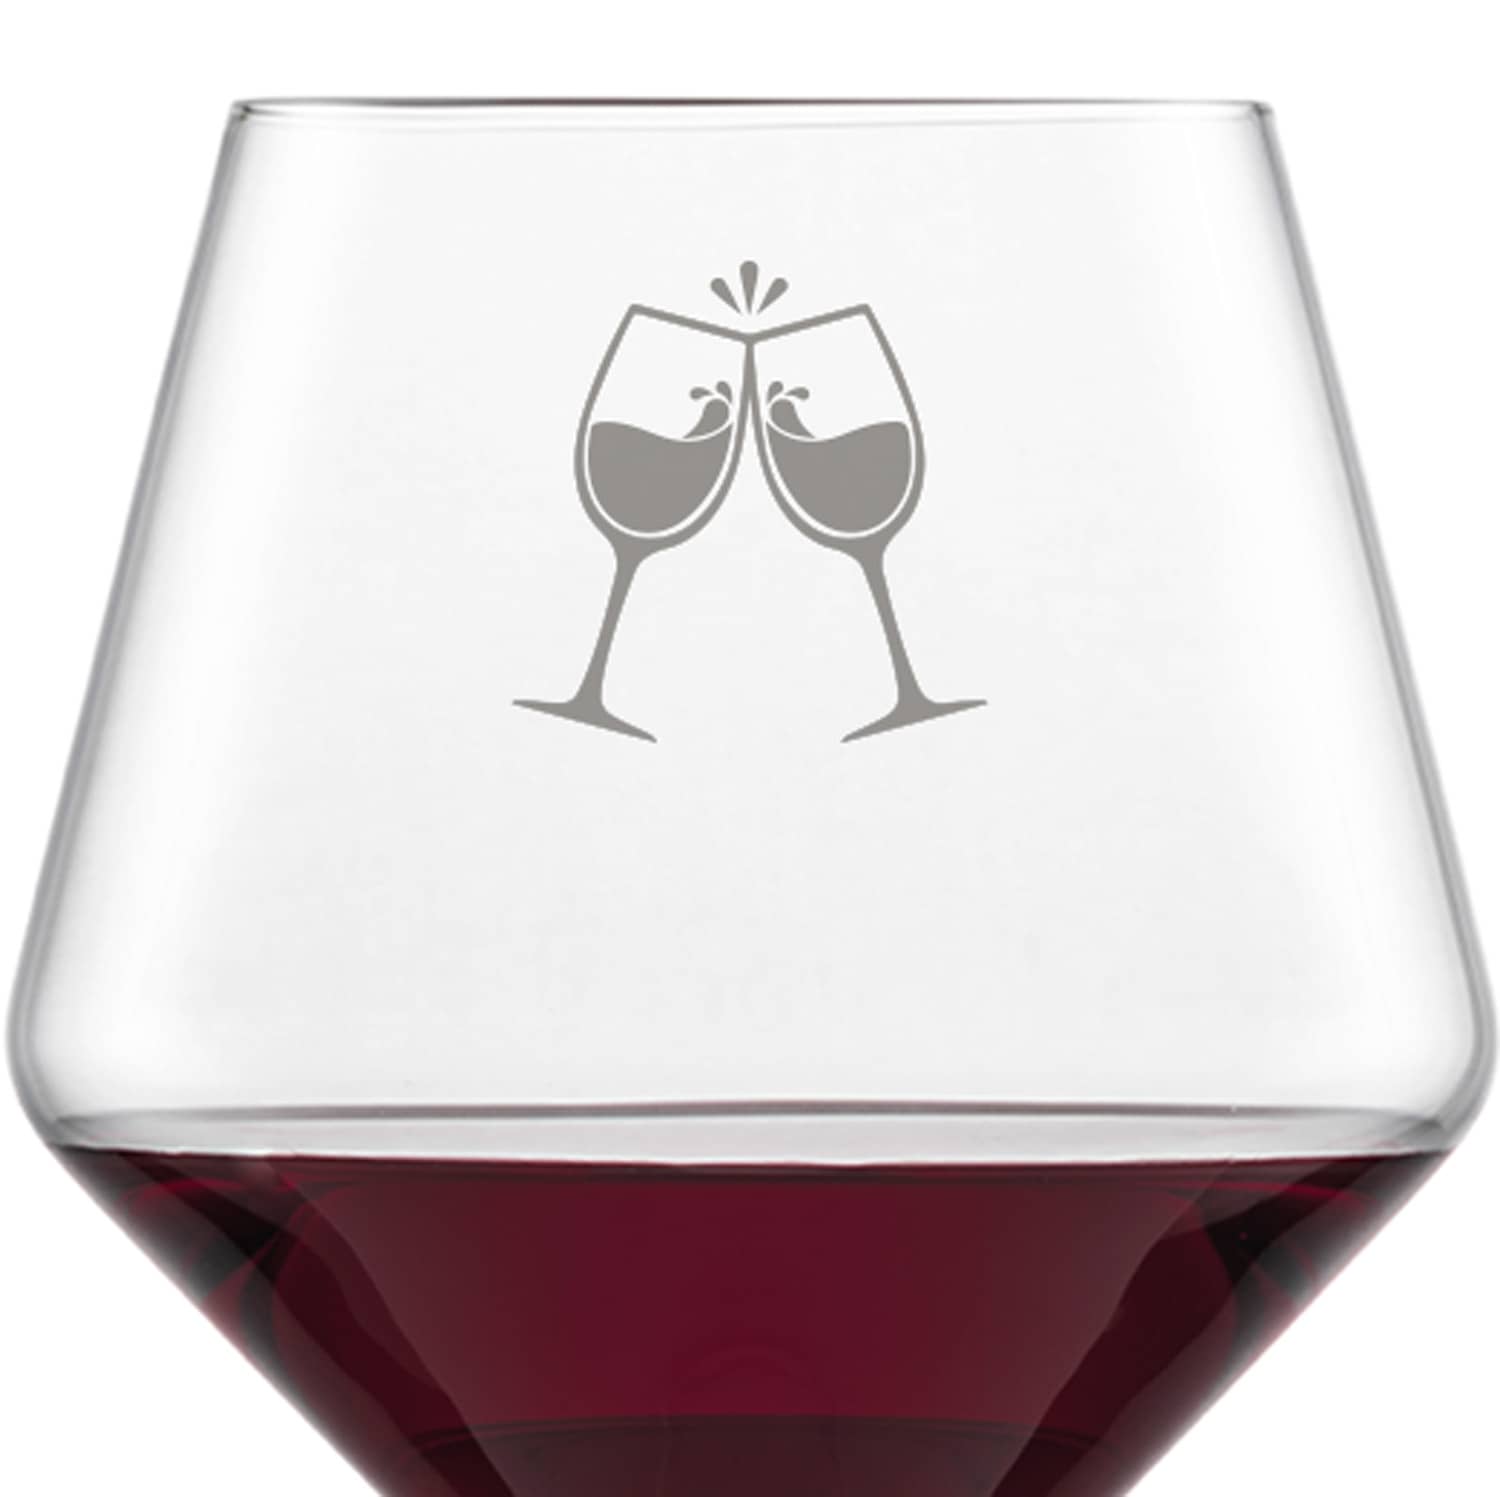 Schott Zwiesel Burgunderglas Rotweinglas PURE mit Namen oder Wunschtext graviert (ChinChin)